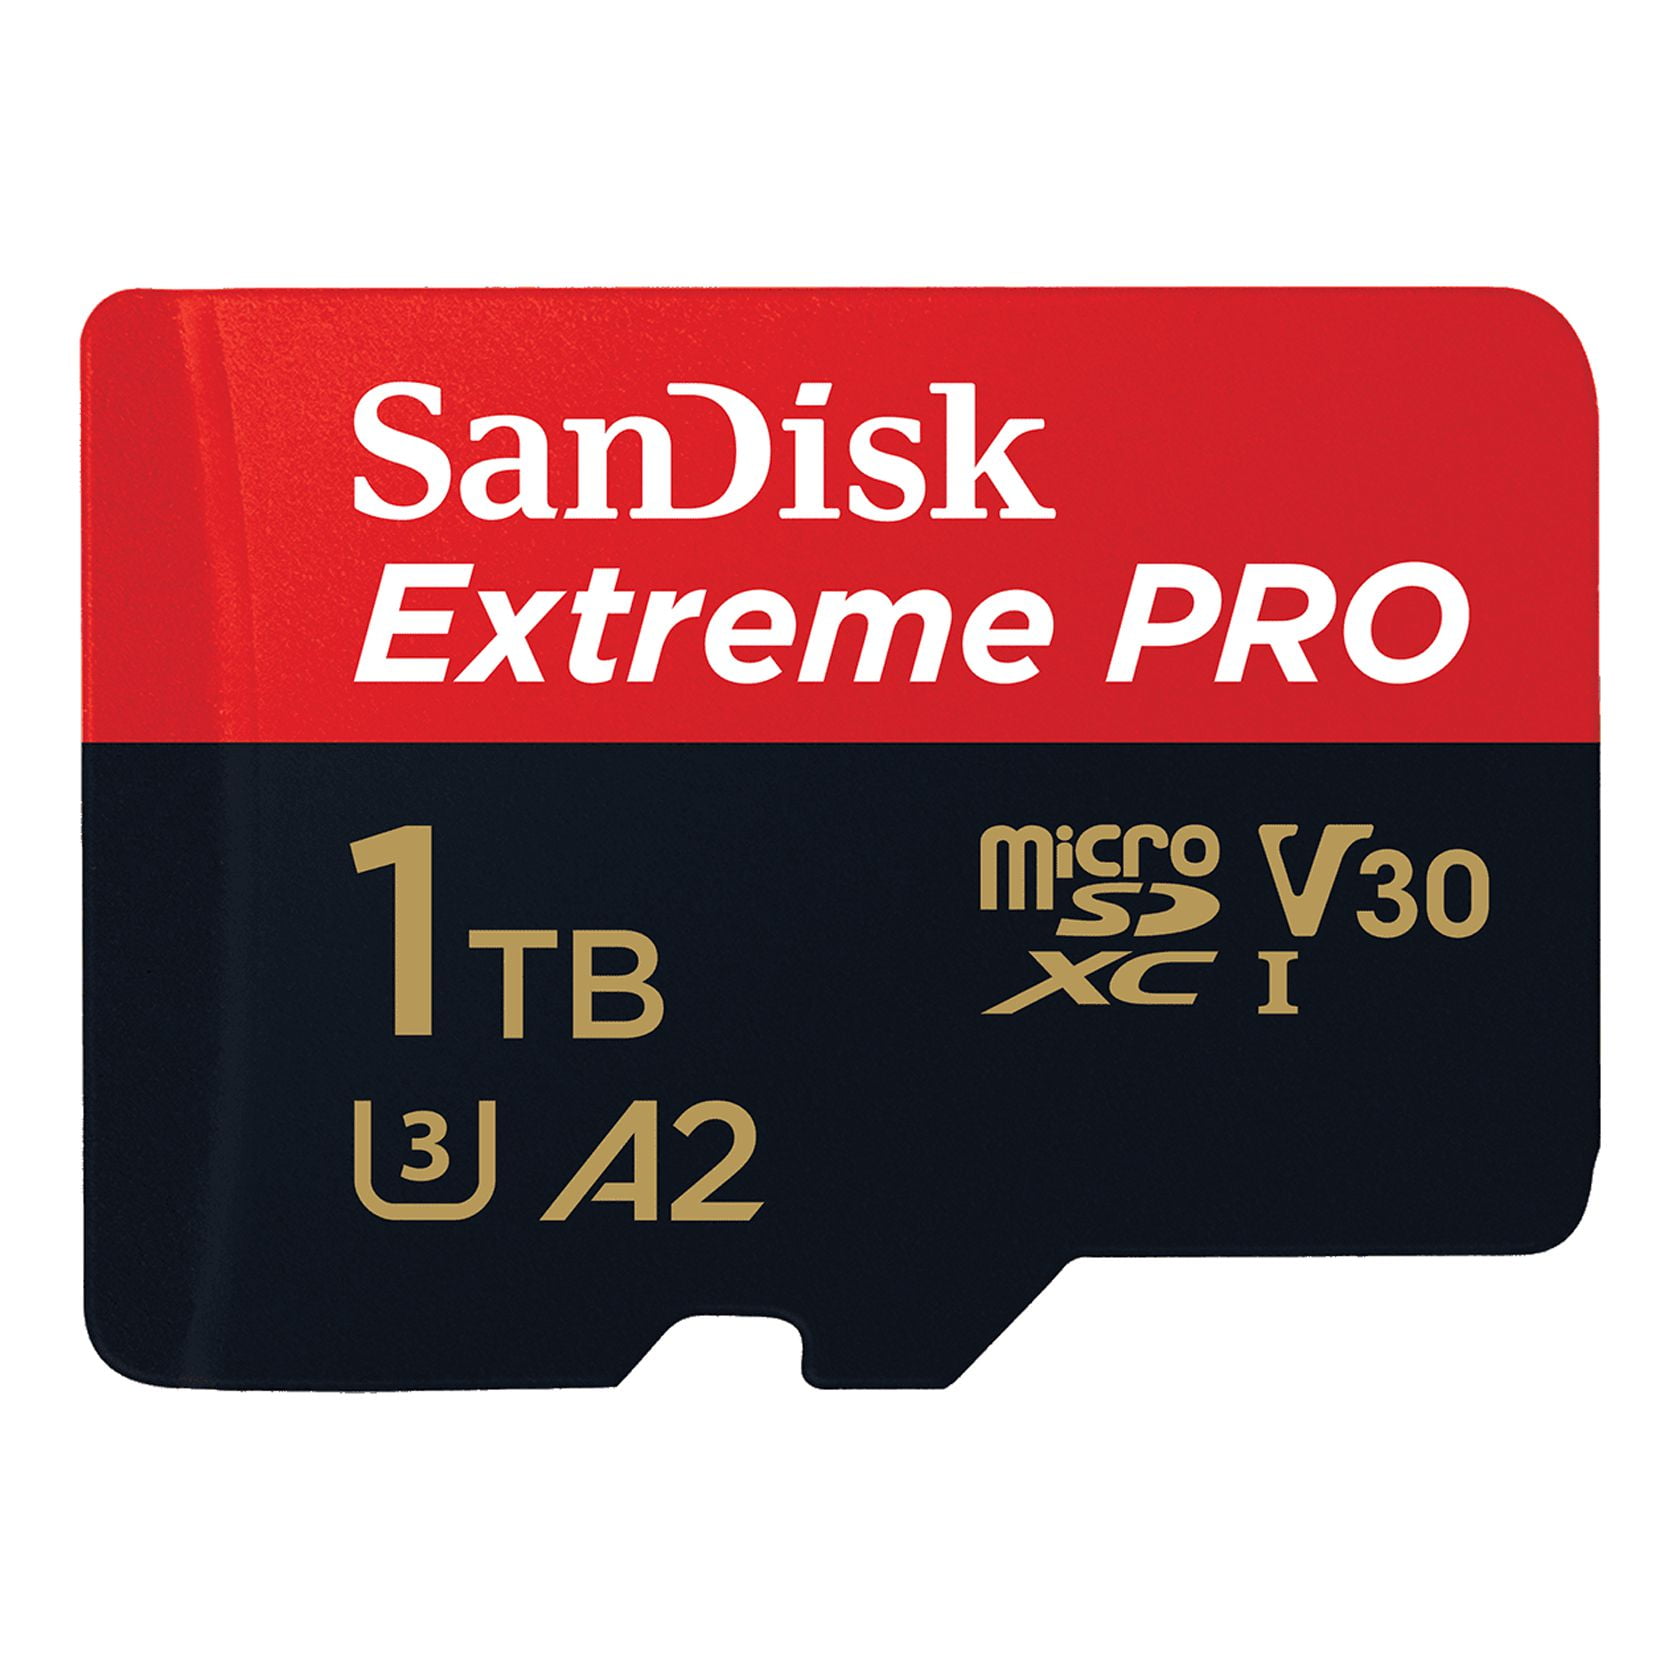 SanDisk 1TB Extreme Pro microSDXC UHS-I Memory Card 